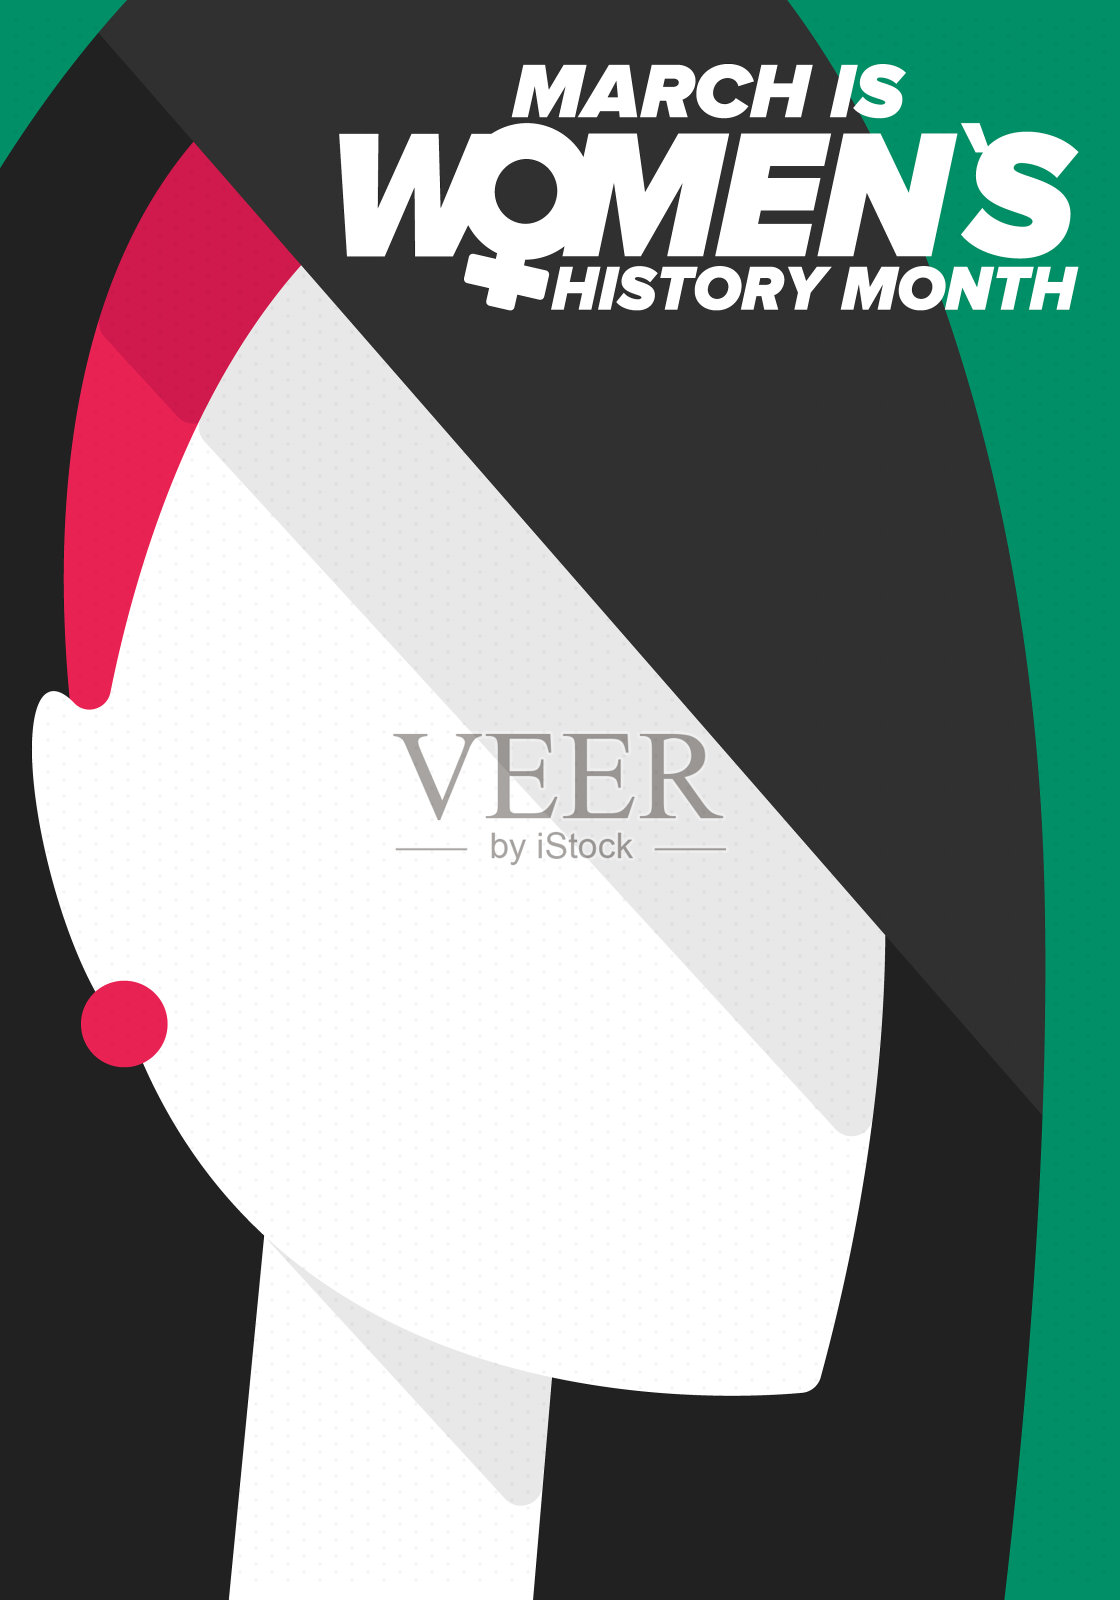 妇女历史月。每年三月庆祝，以纪念妇女对历史的贡献。女性的象征。妇女的权利。世界上的女孩力量。海报,明信片,旗帜。矢量图设计模板素材